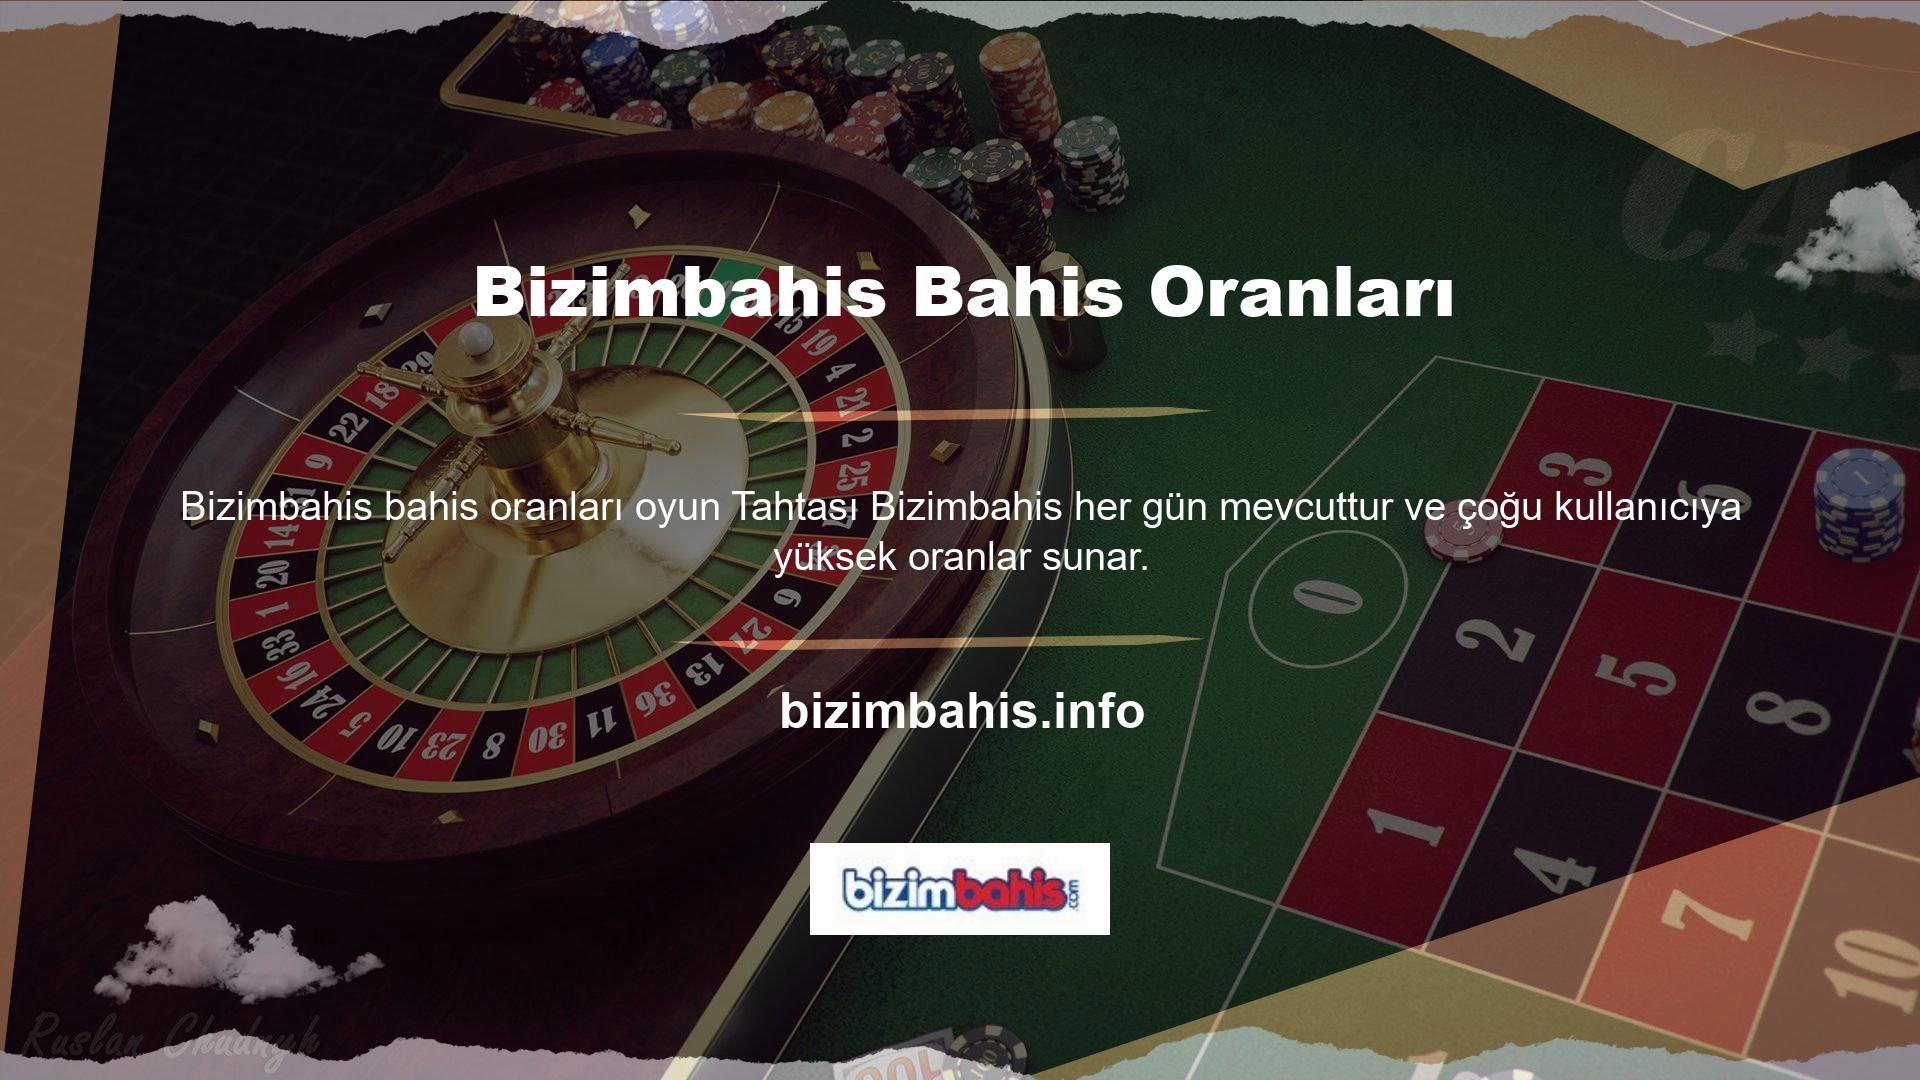 Oranlara gelince, Türk Bizimbahis web sitesinde çok iyi oranlara kolayca ulaşabilirsiniz